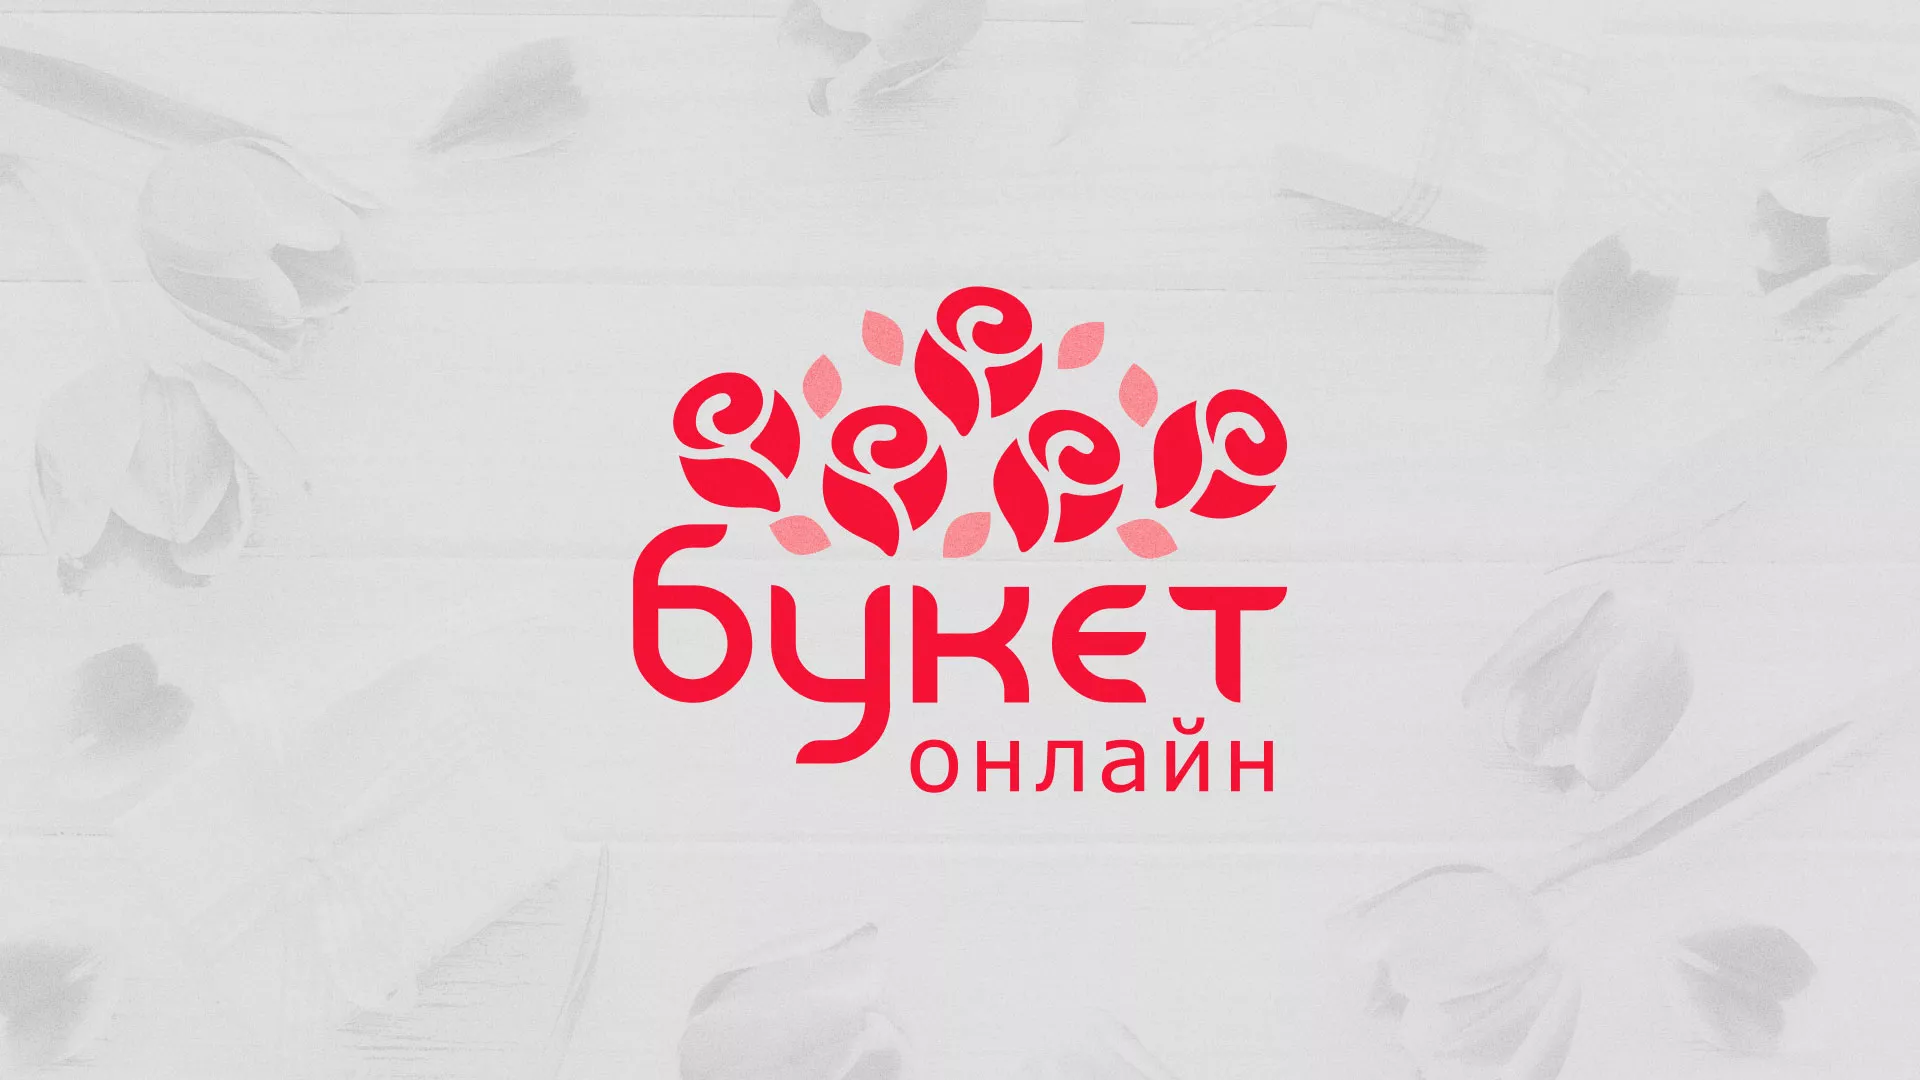 Создание интернет-магазина «Букет-онлайн» по цветам в Прокопьевске